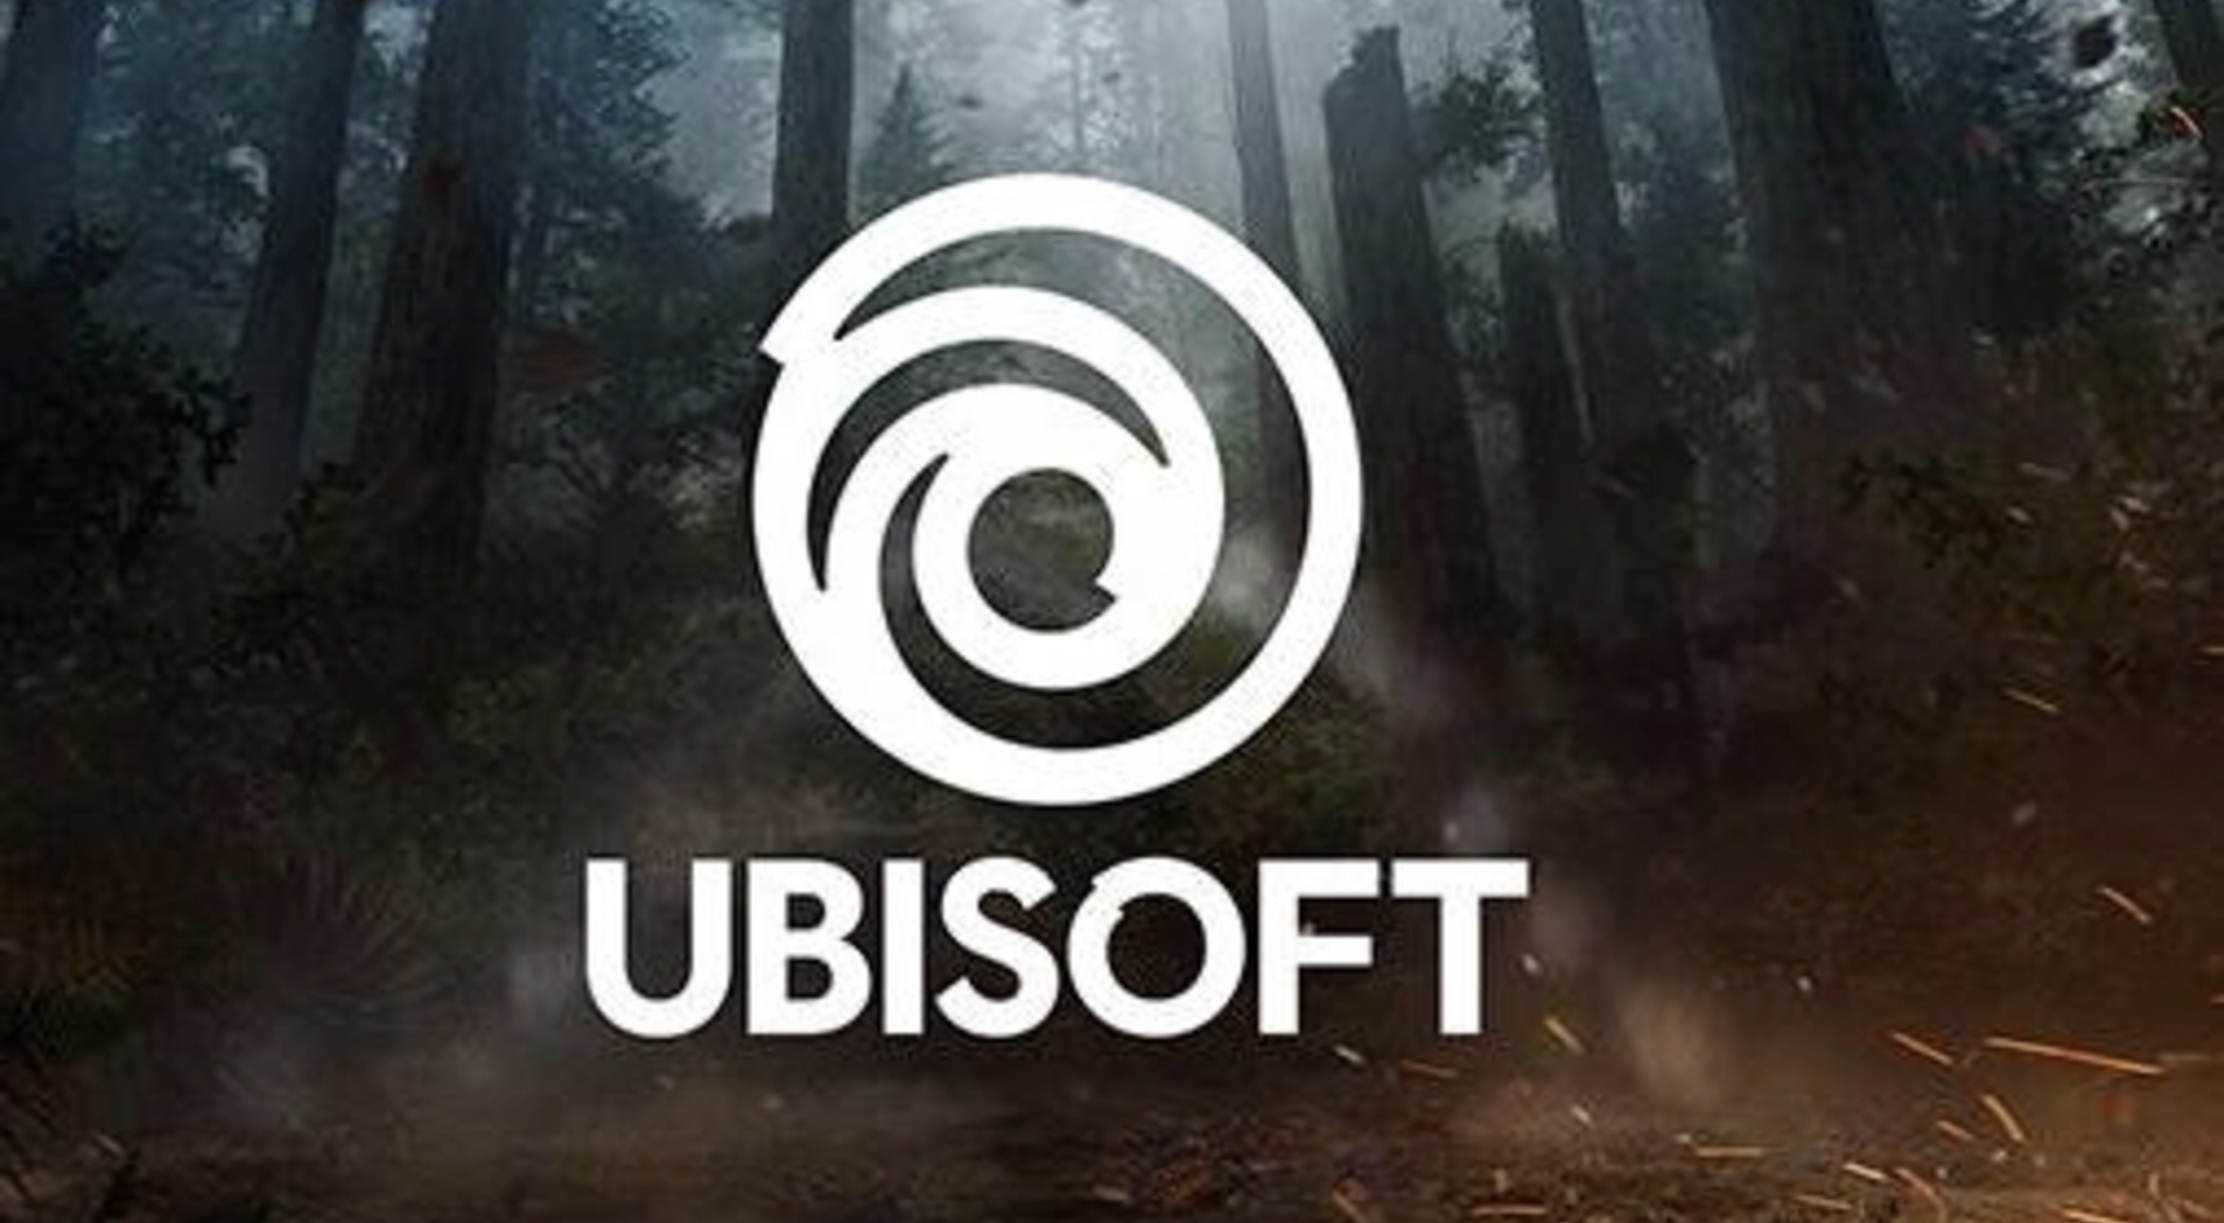 Ubisoft is Cutting 45 Jobs in Fresh Round of Layoffs